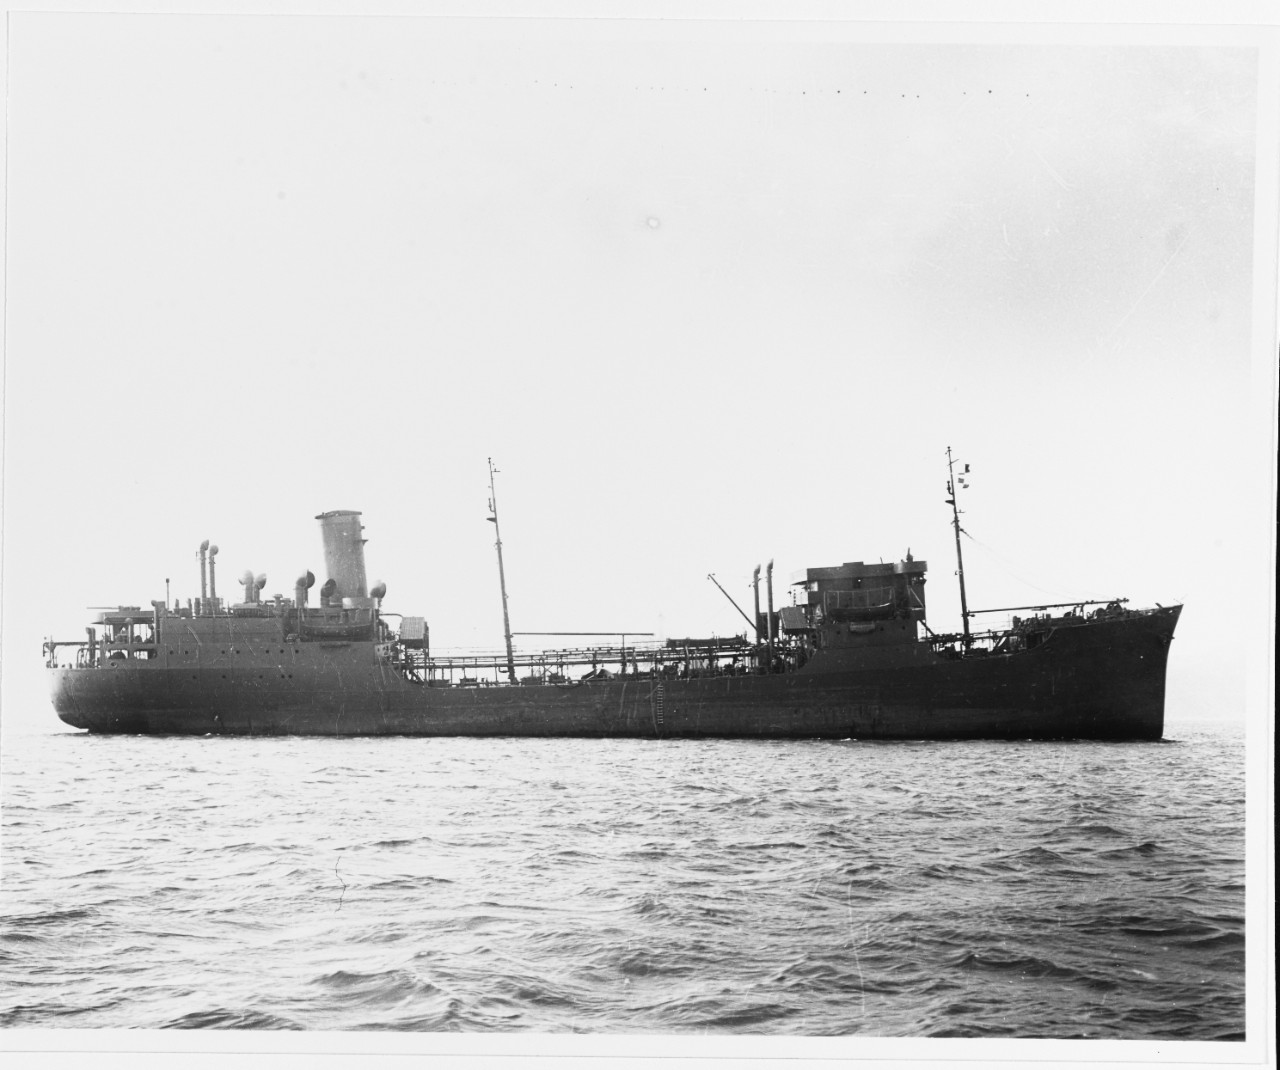 S.S. M.E. LOMBARDI (U.S. Merchant Tanker, 1940-1972)